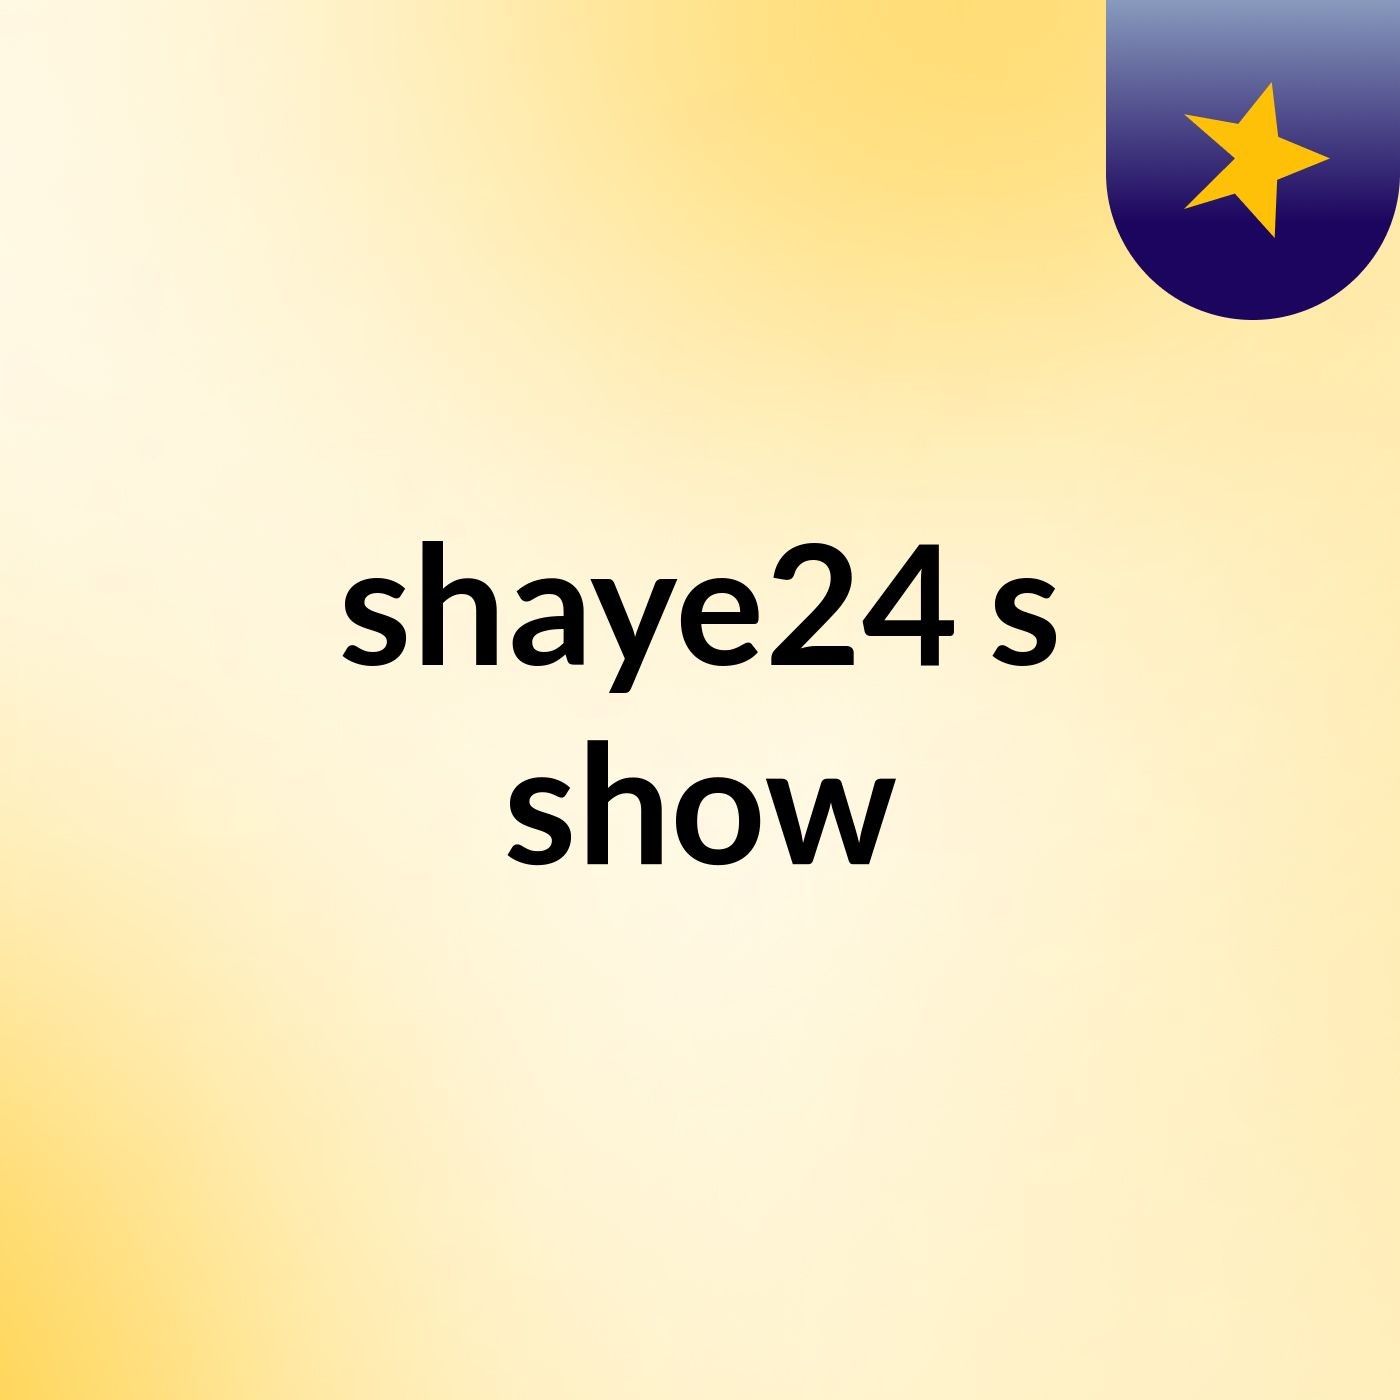 shaye24's show